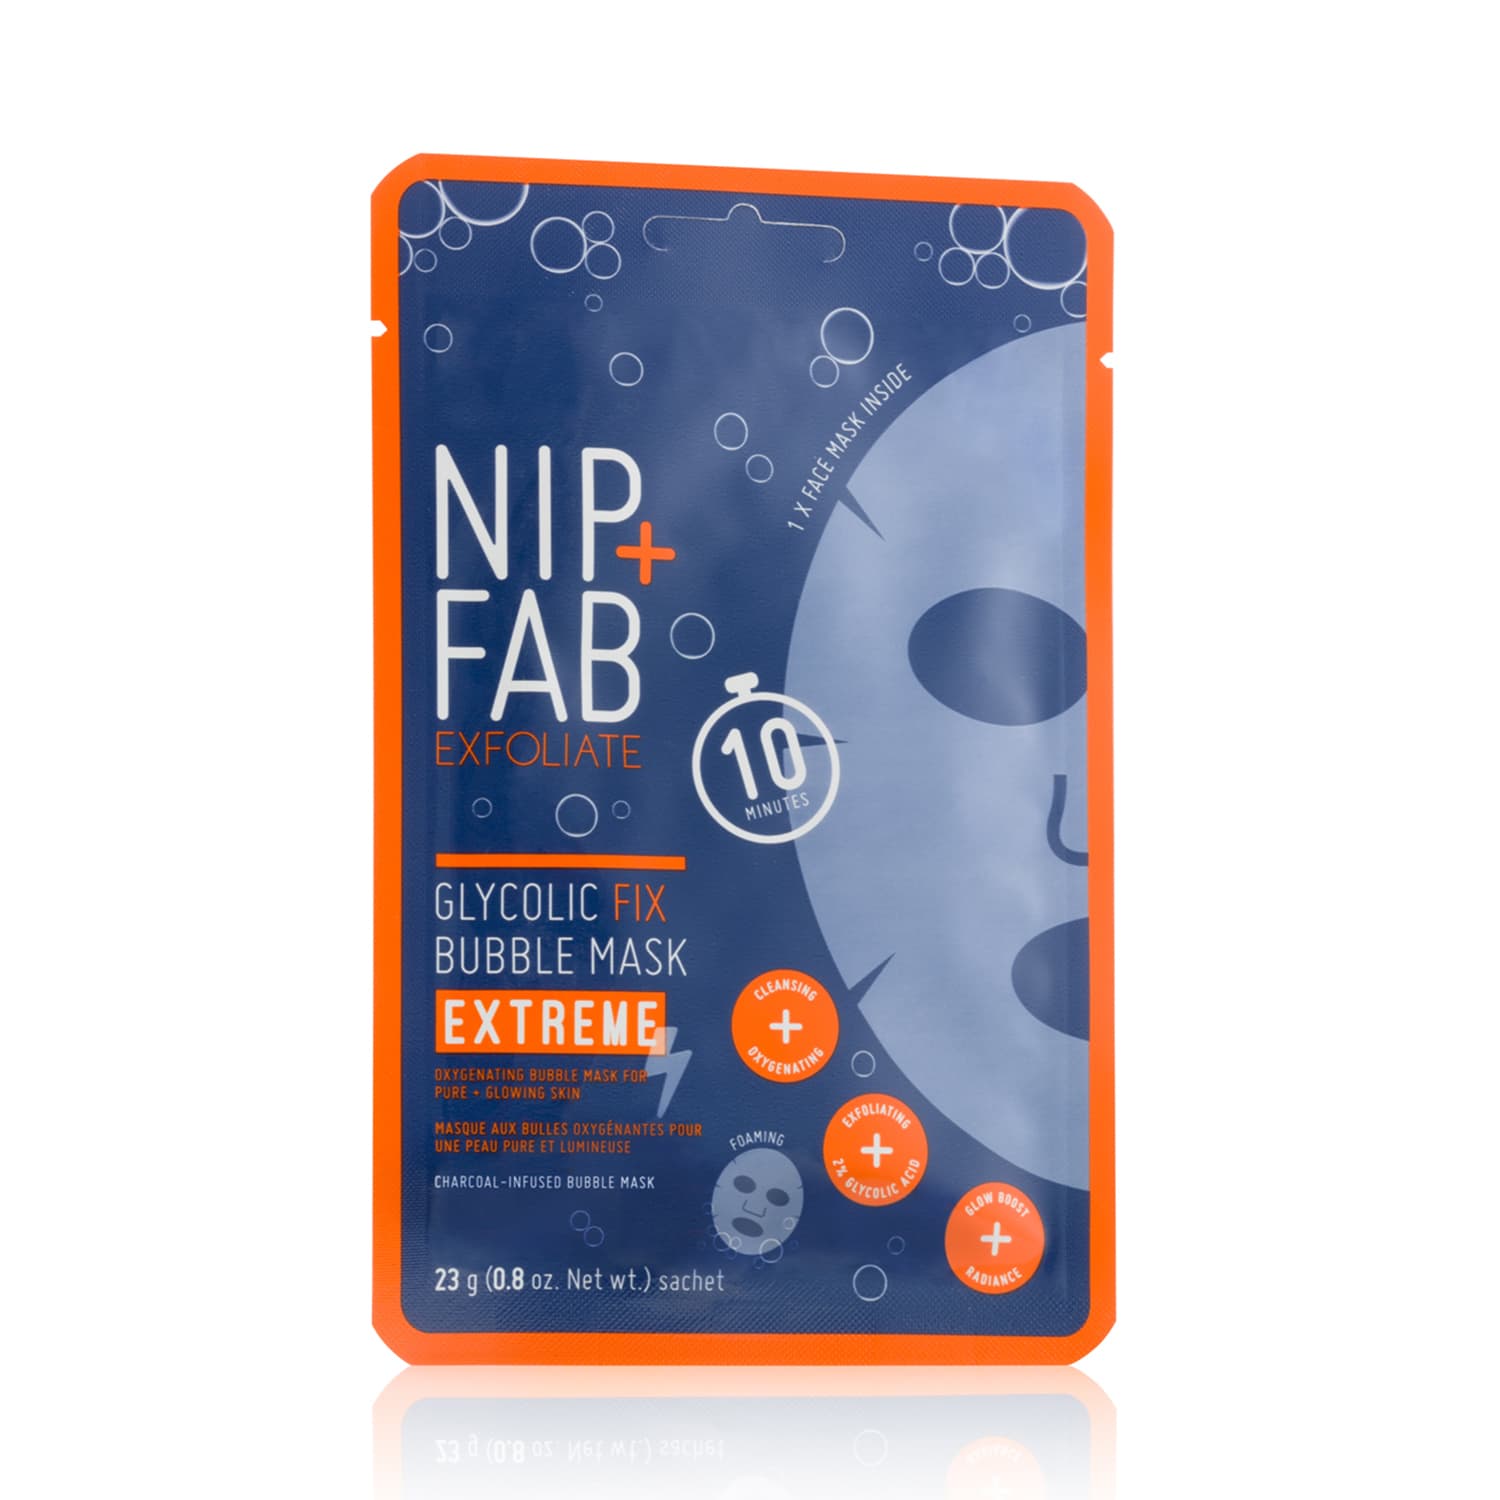 NIP+FAB Glycolic Fix Bubble Mask Extreme